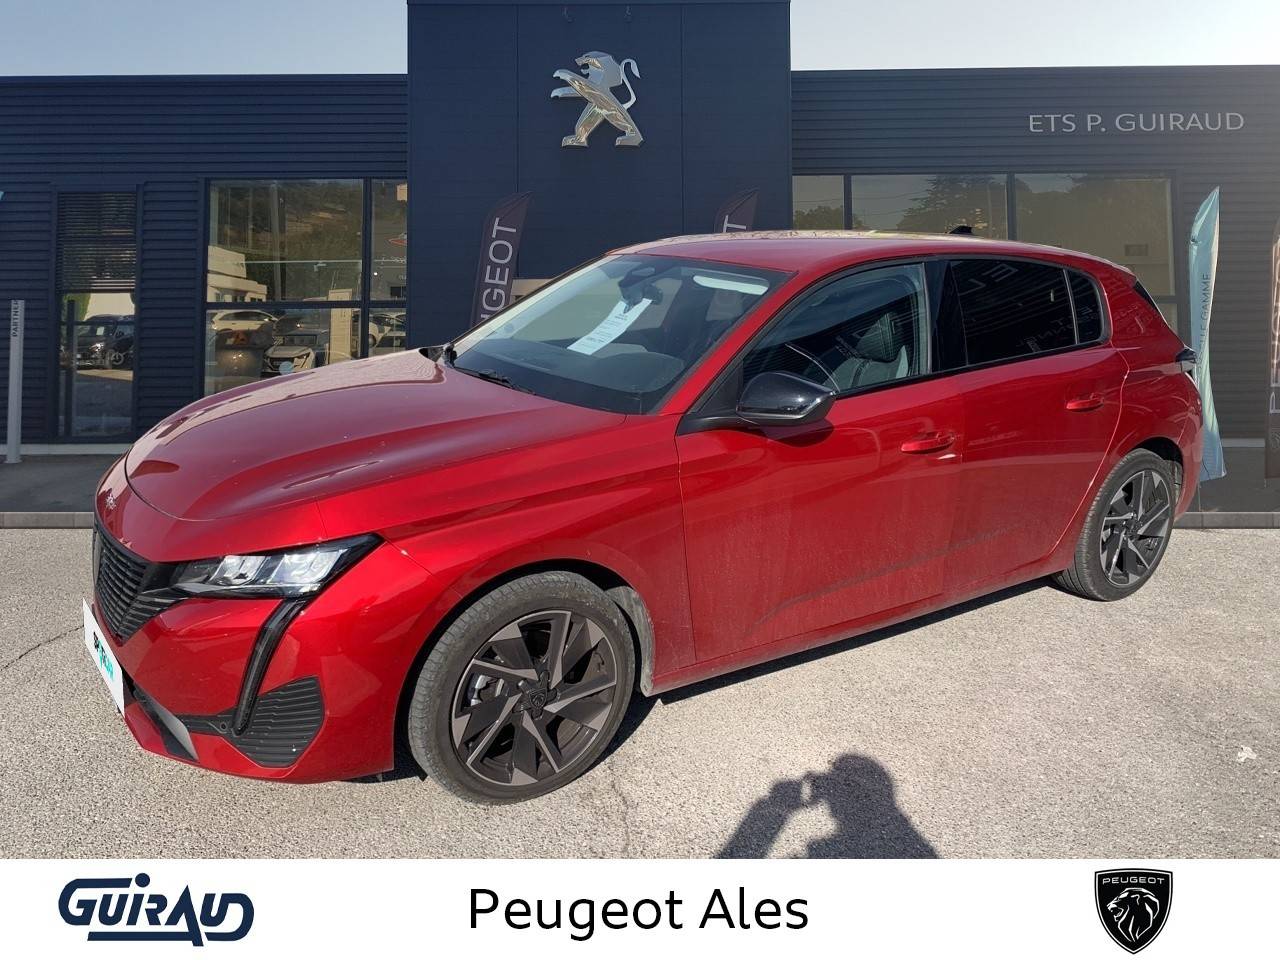 PEUGEOT 308 | 308 BlueHDi 130ch S&S EAT8 occasion - Peugeot Alès